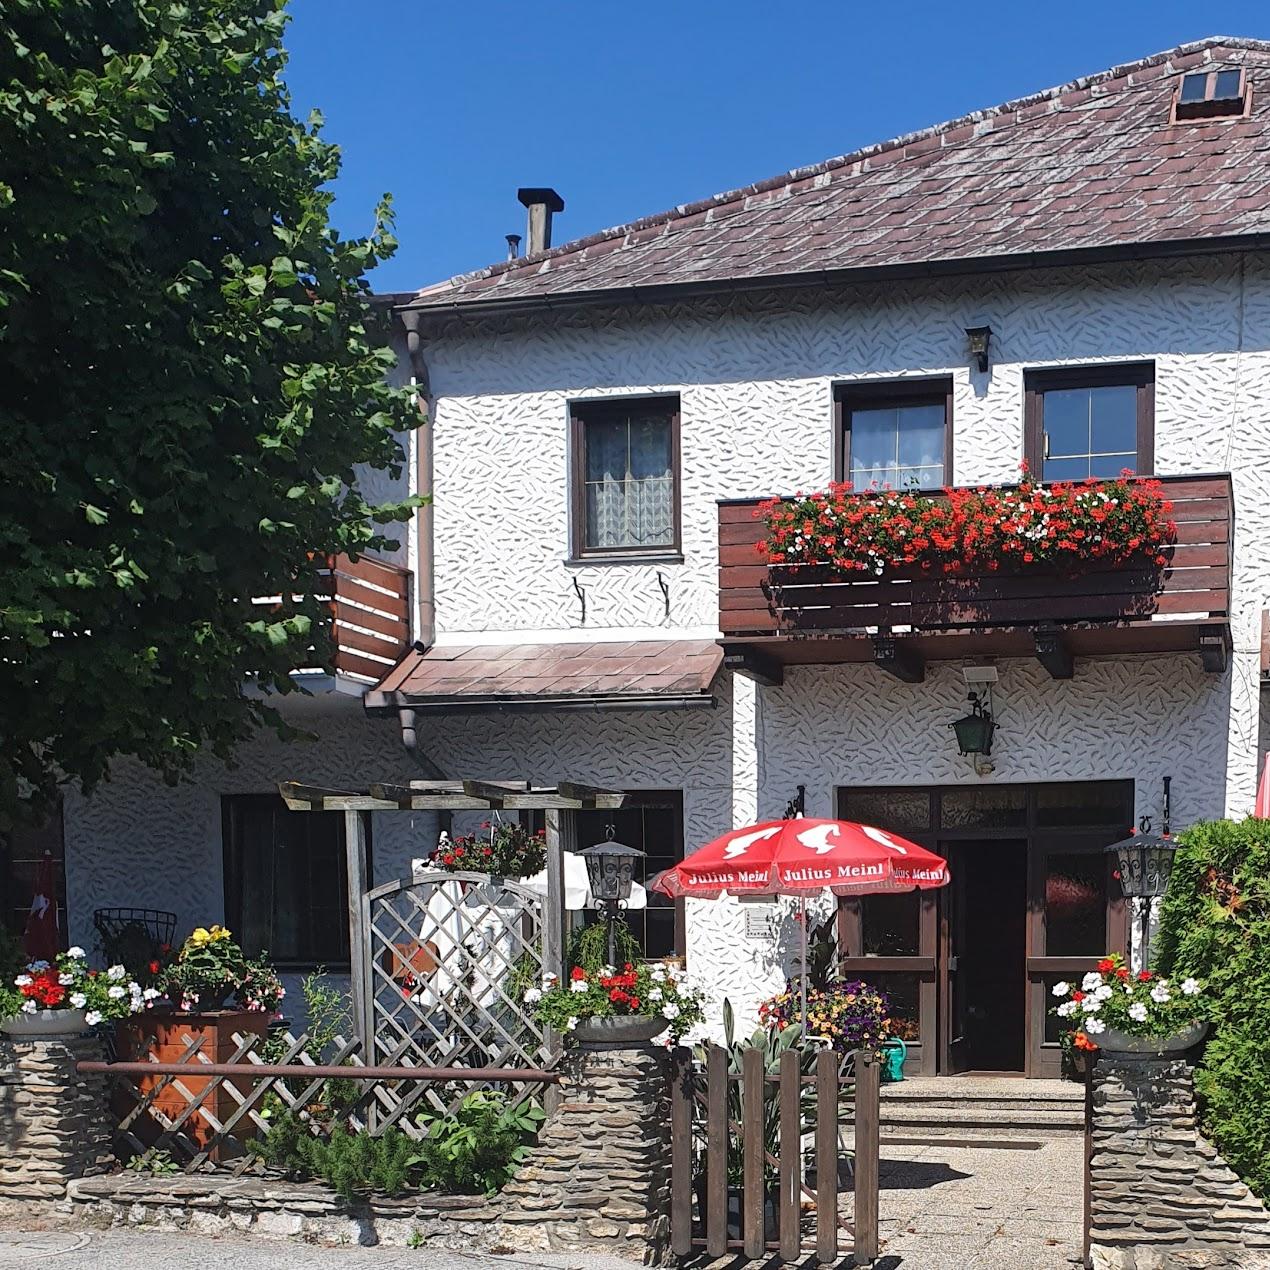 Restaurant "Gasthaus zum Schöpflgitter" in Klausen-Leopoldsdorf